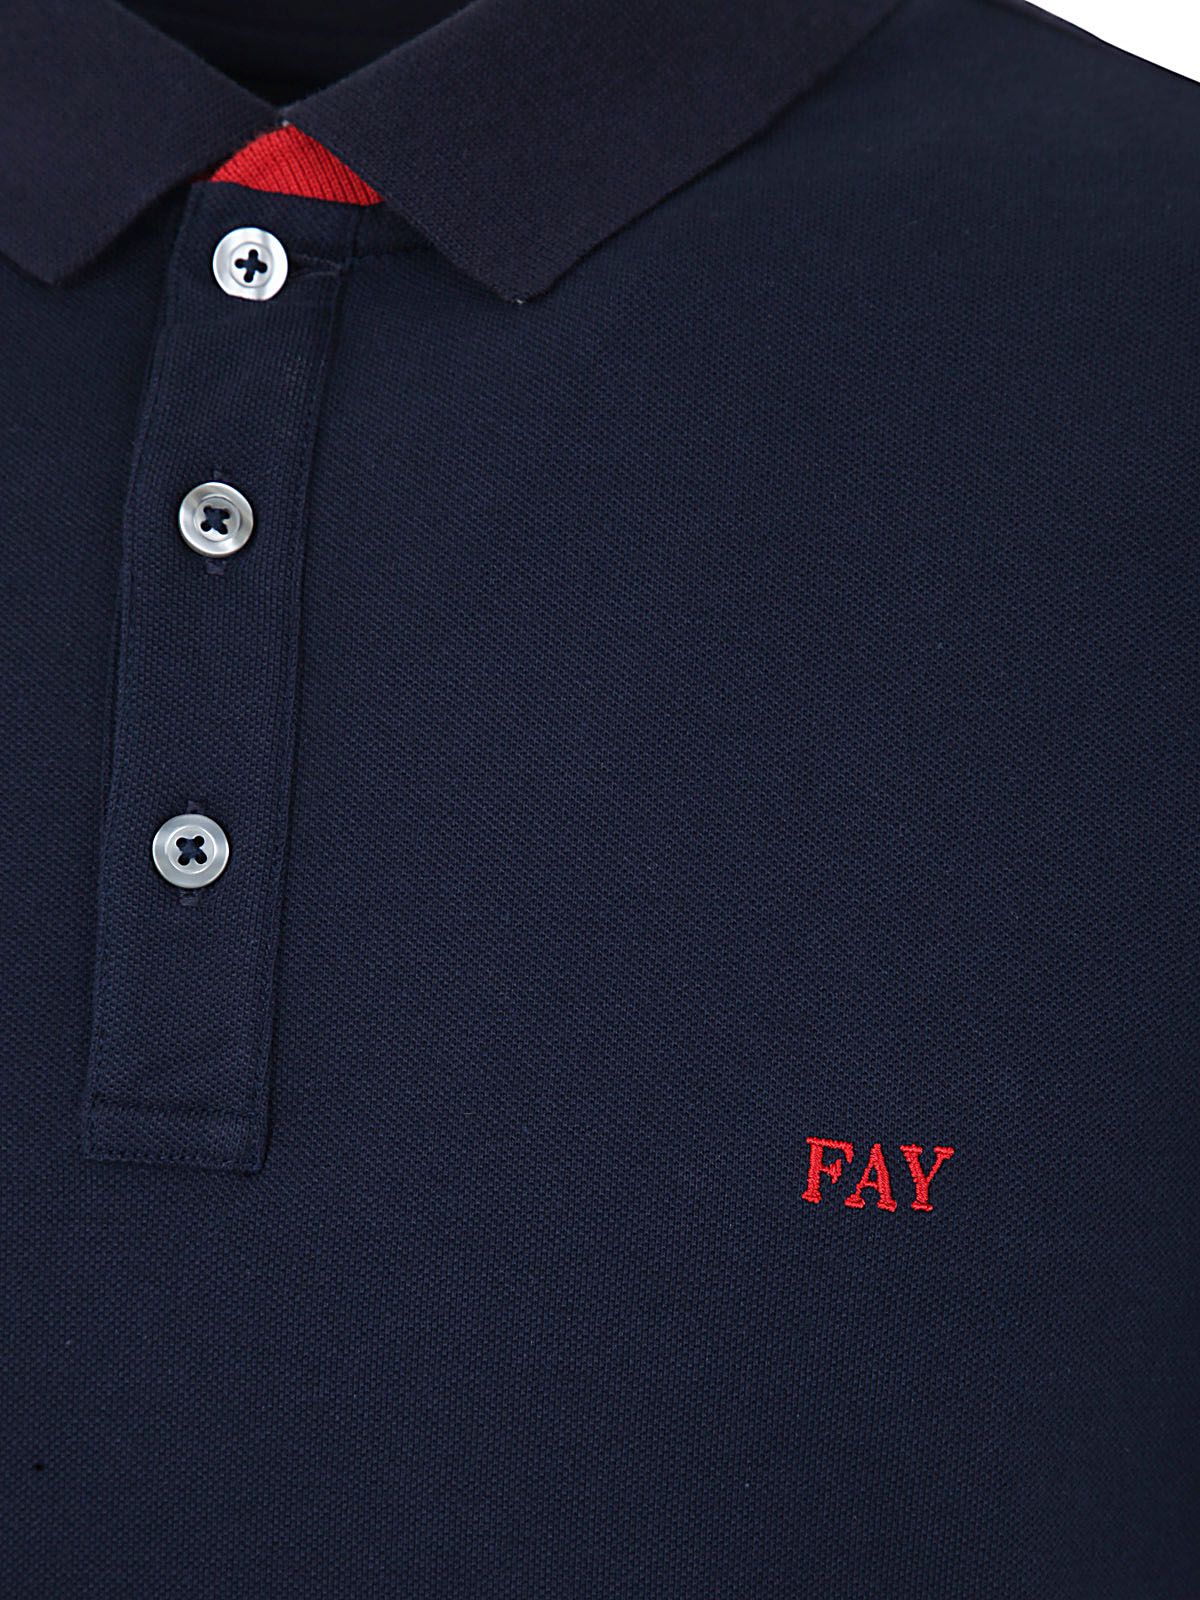 Shop Fay Men's Tshirt - Cotton Polo